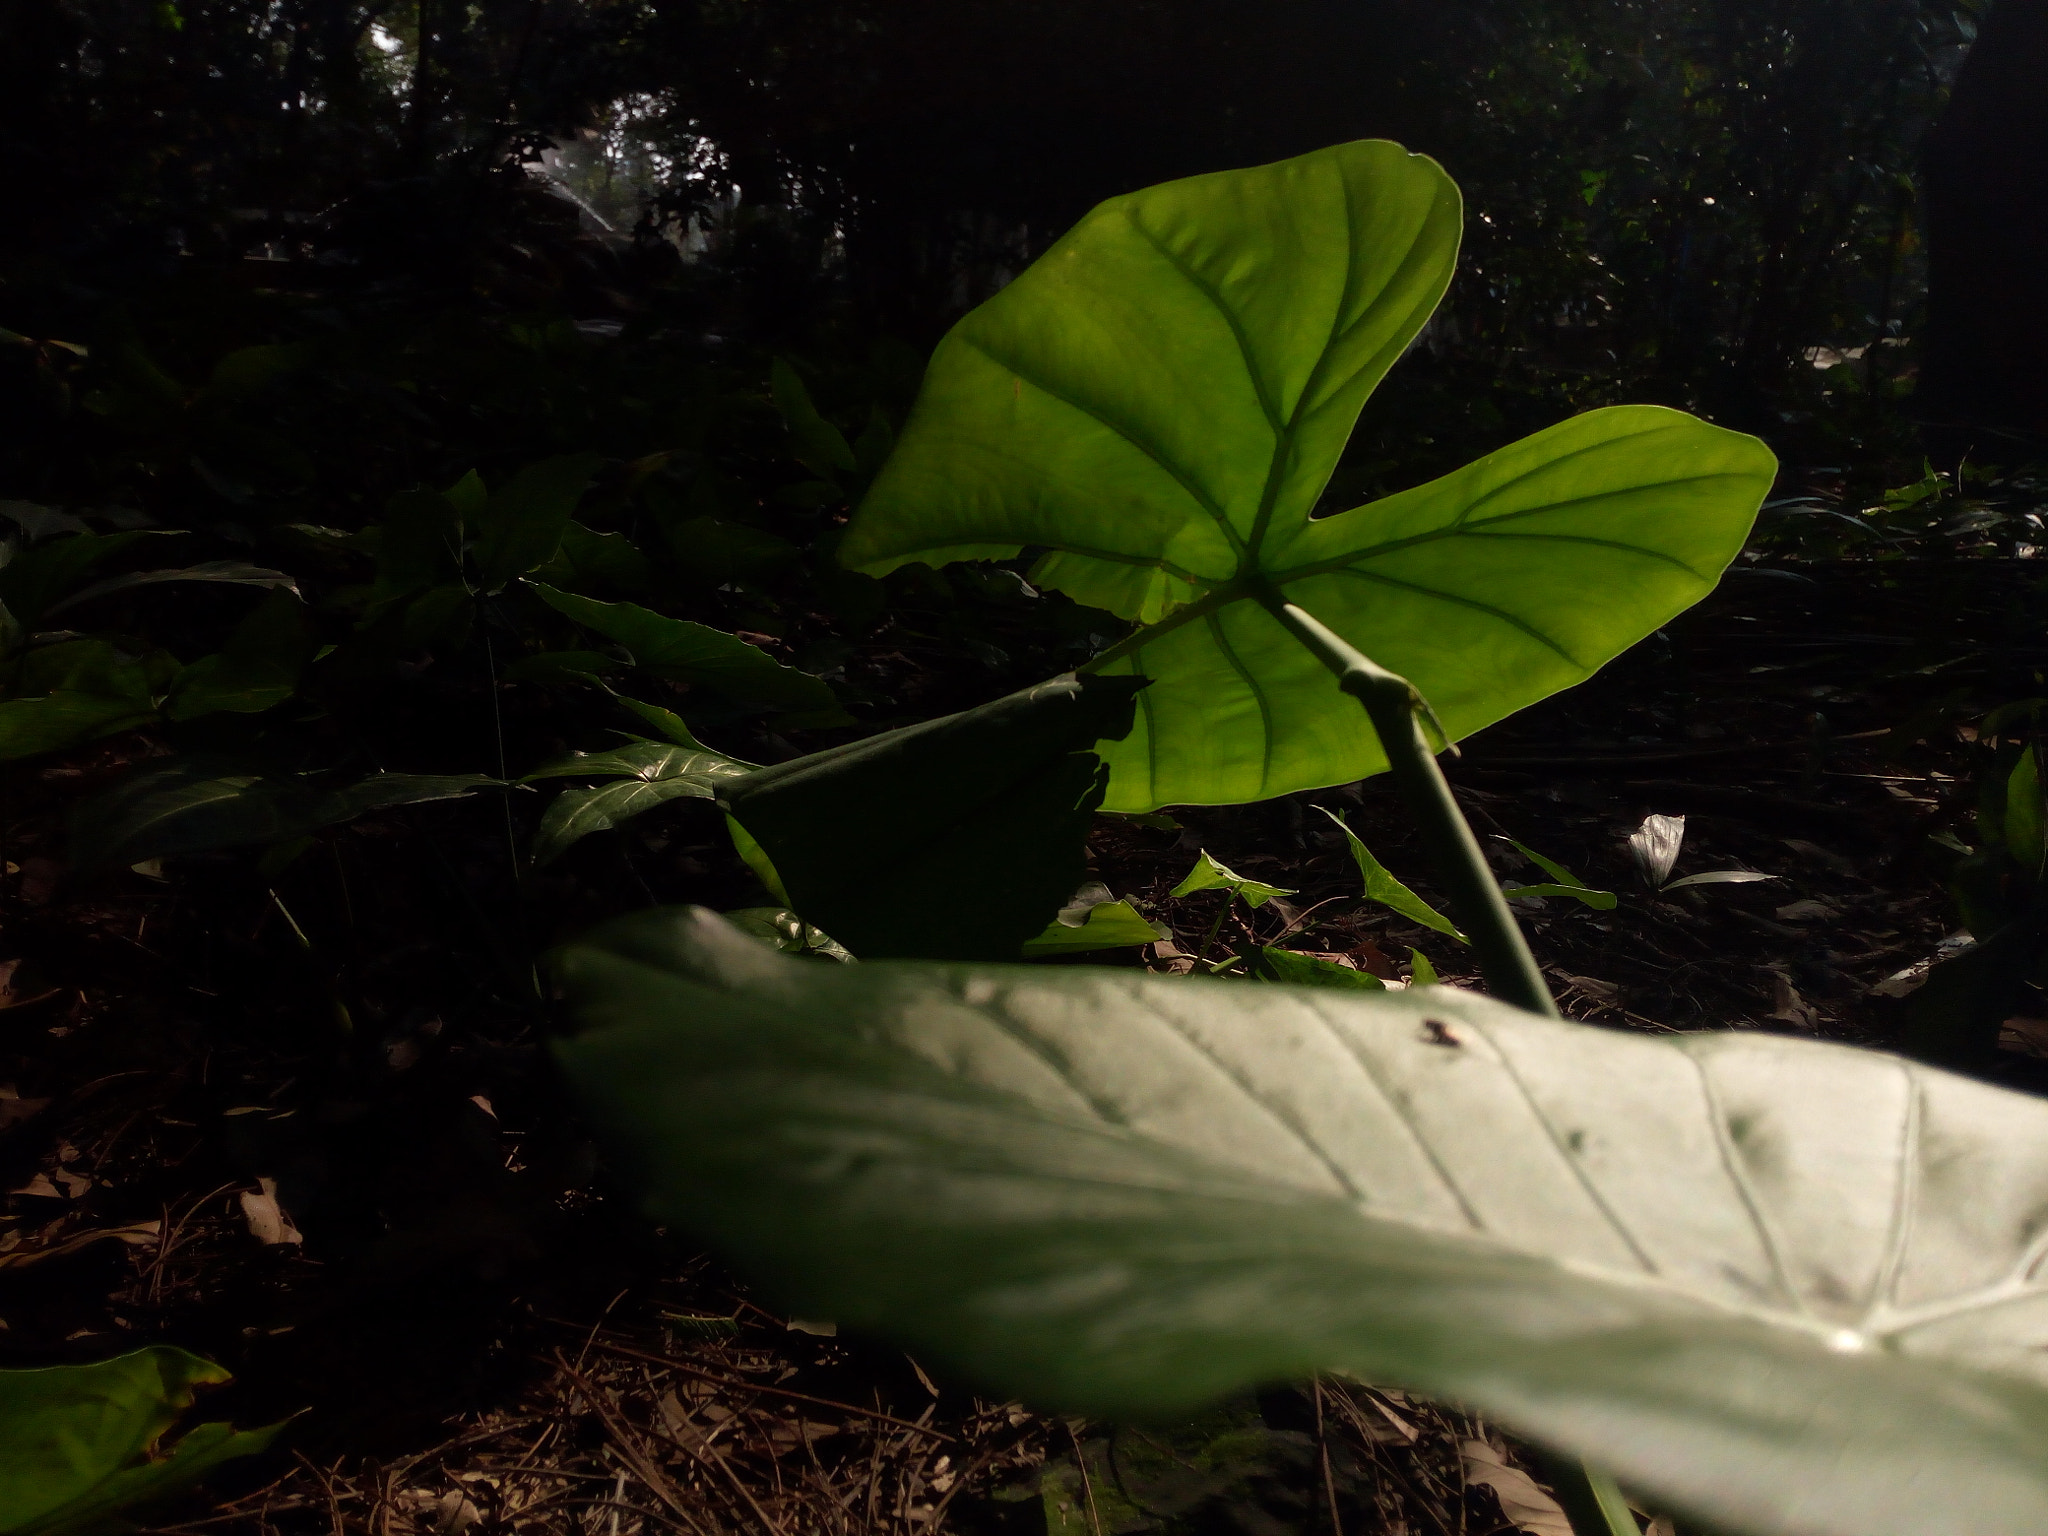 HUAWEI TANGO sample photo. 一块绿光 photography